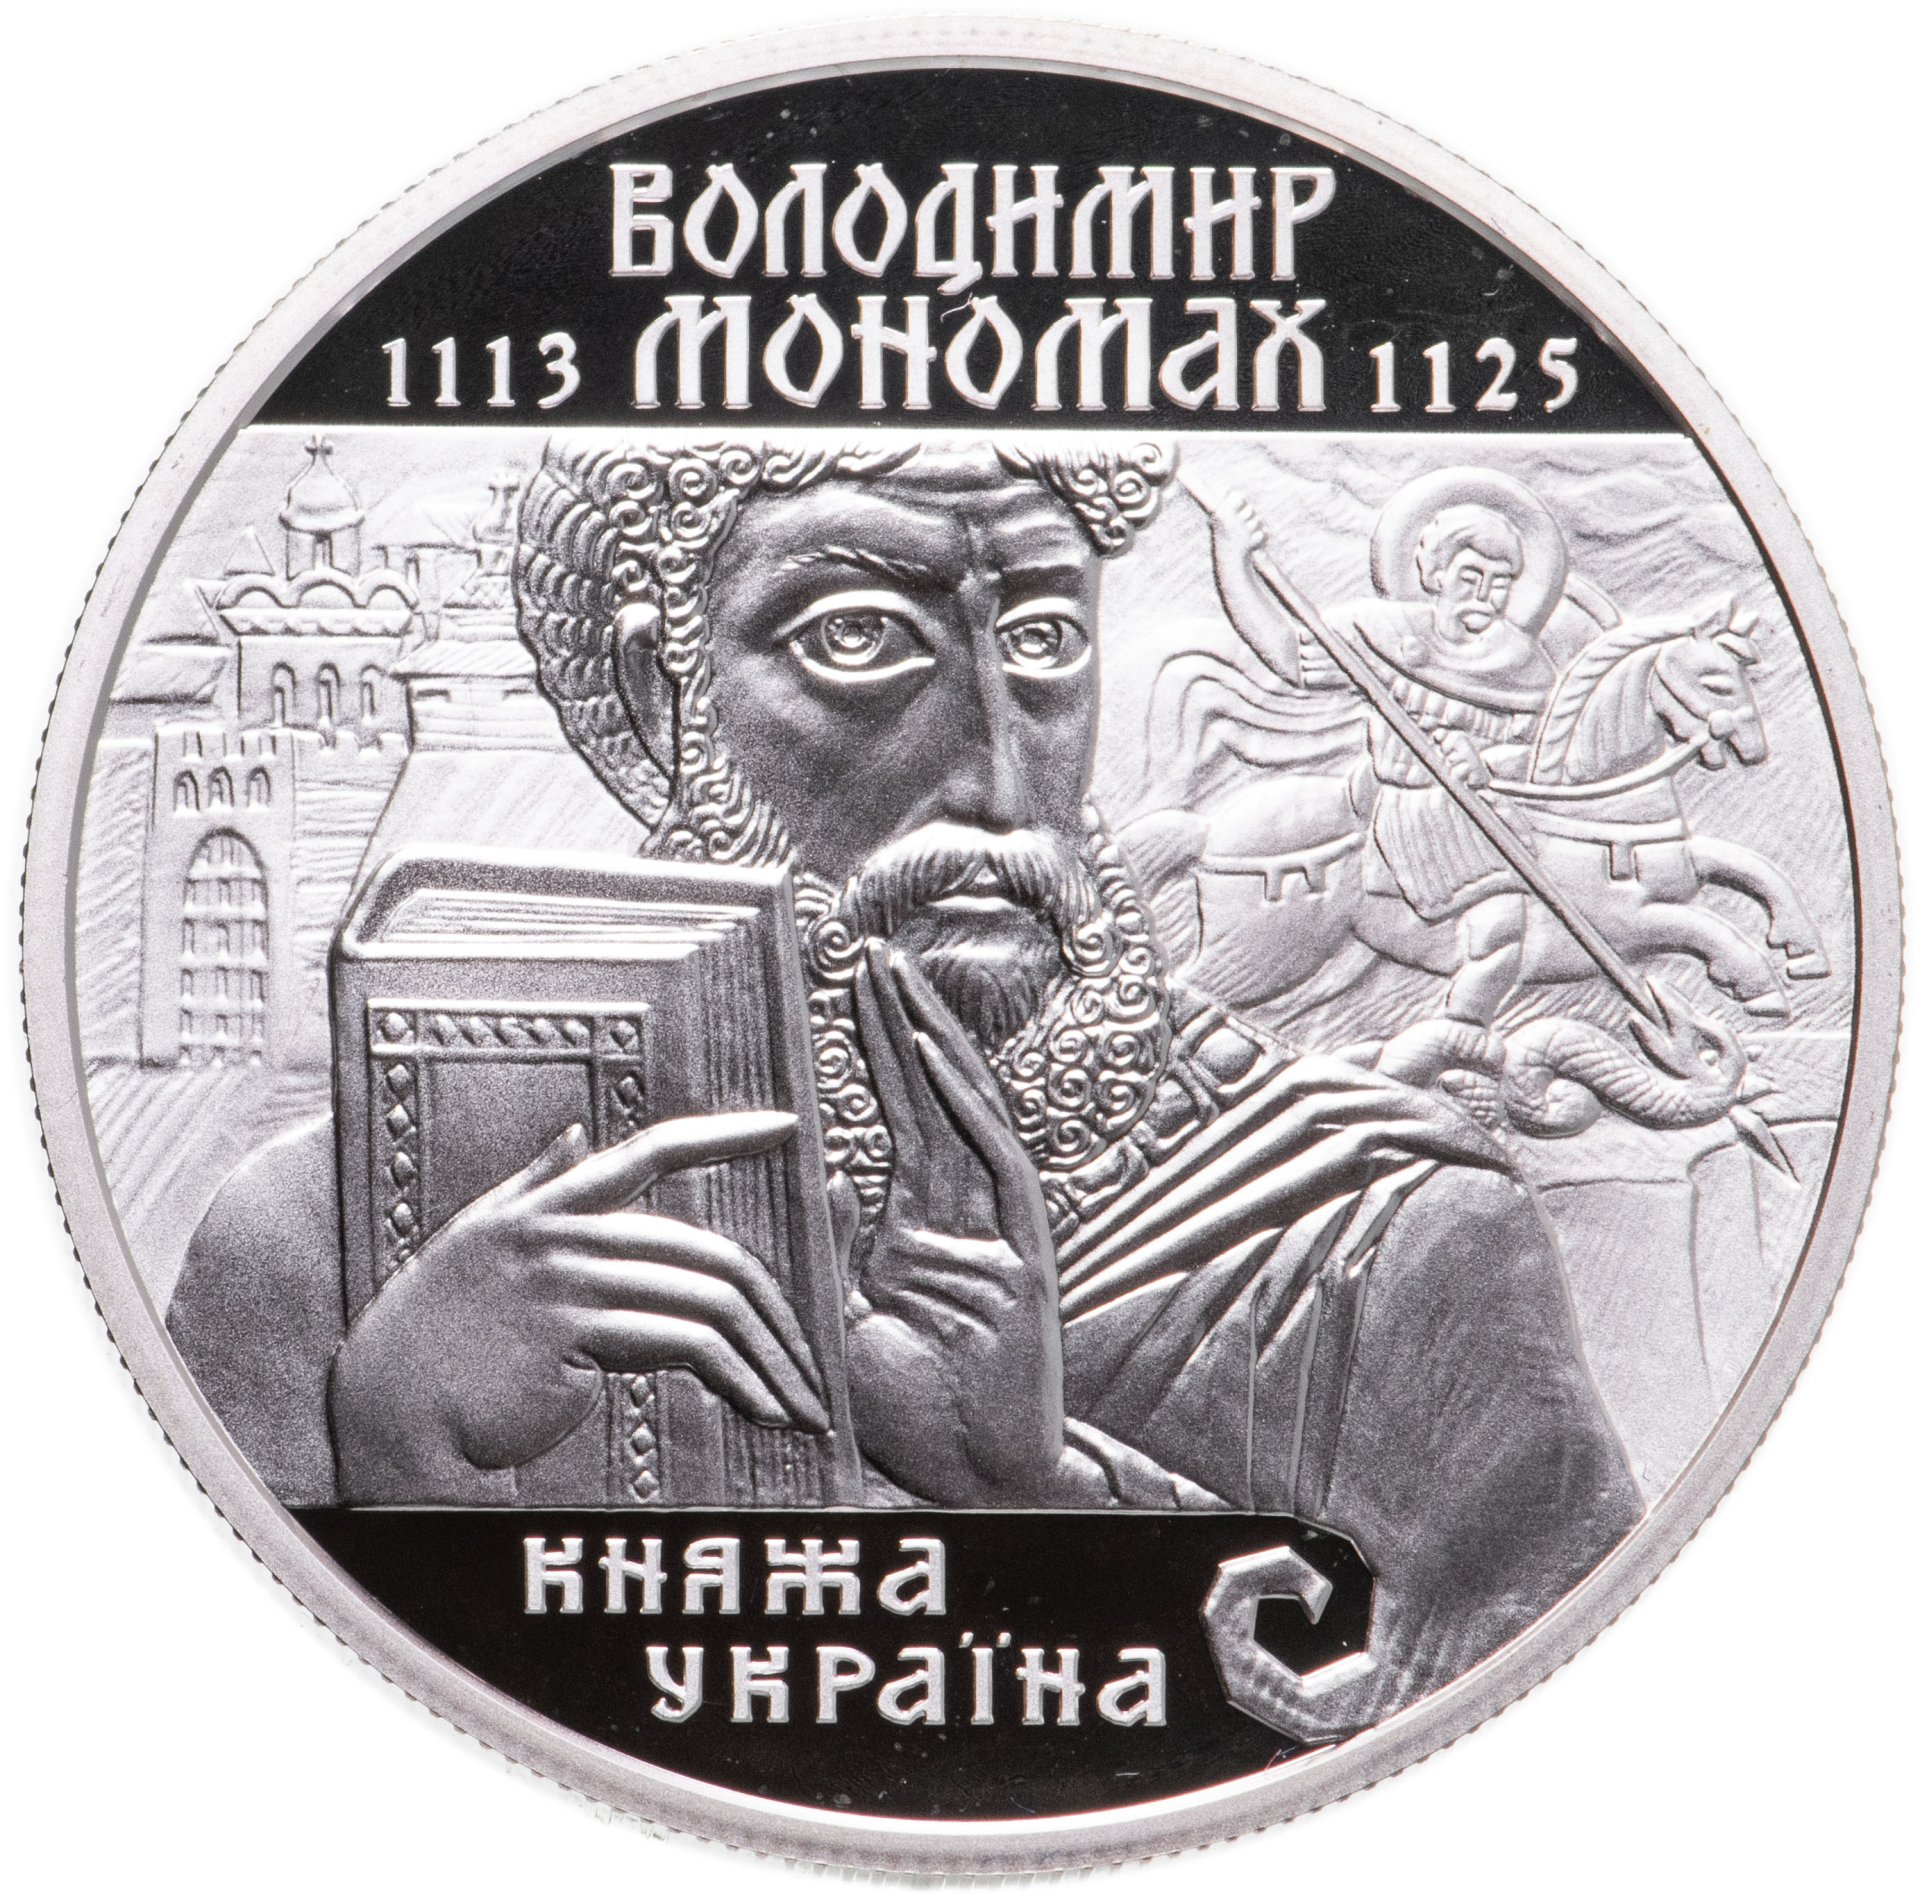 Монеты князя владимира. 10 Гривен монета. Памятная монета Украины, посвященная Владимиру Мономаху.